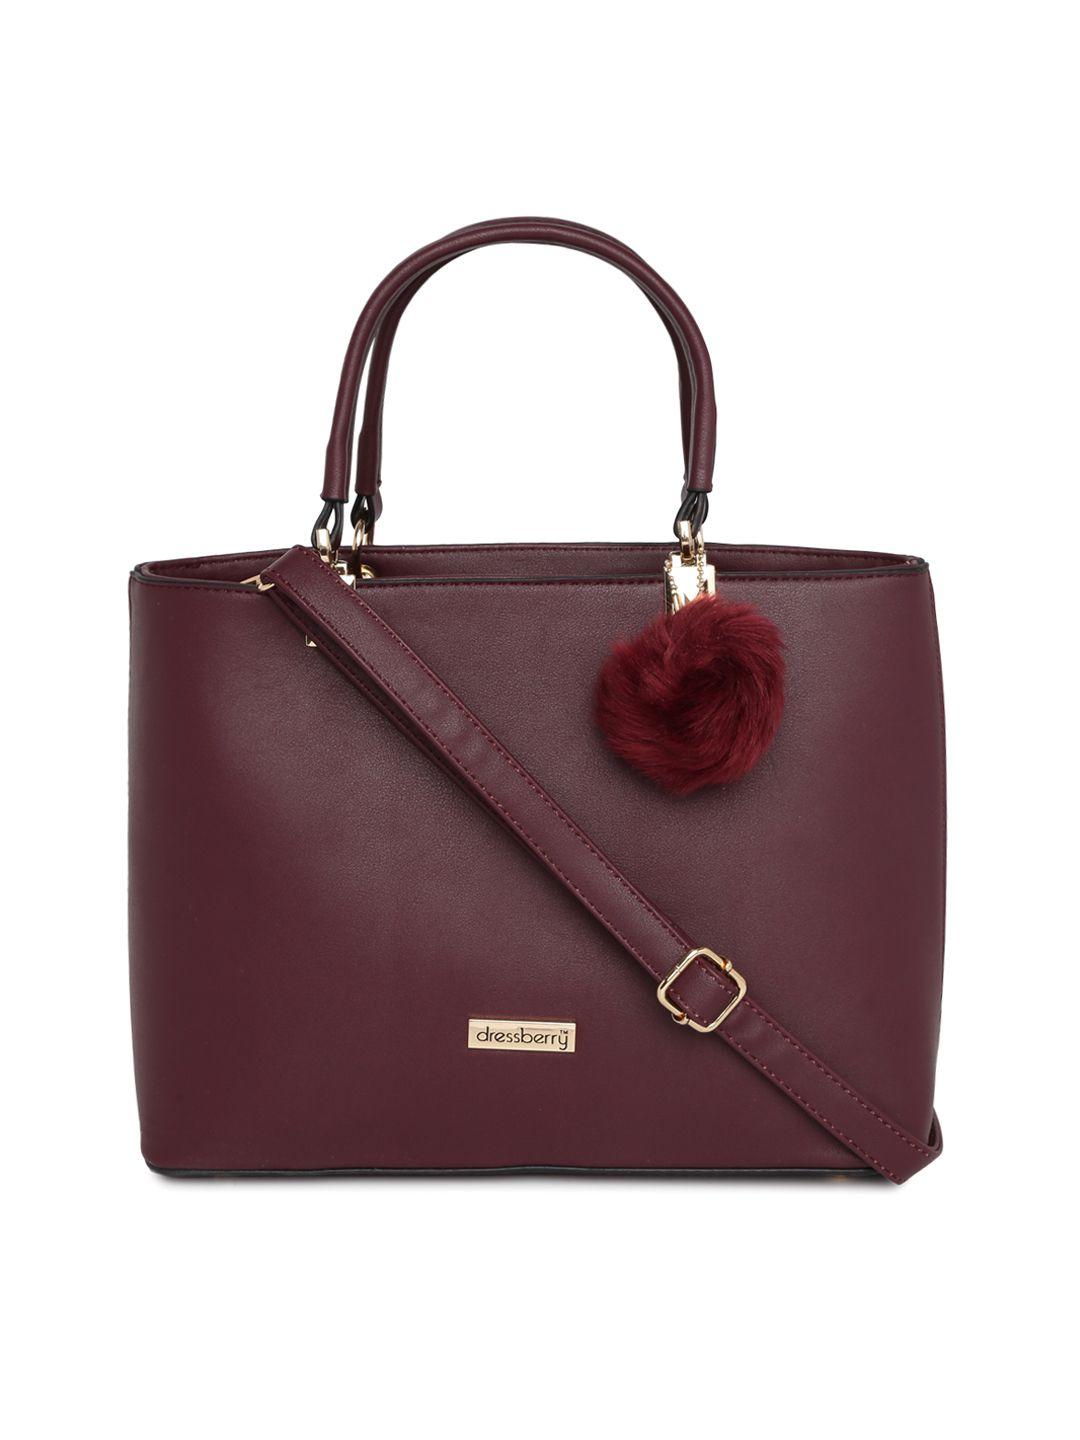 dressberry burgundy solid handheld bag